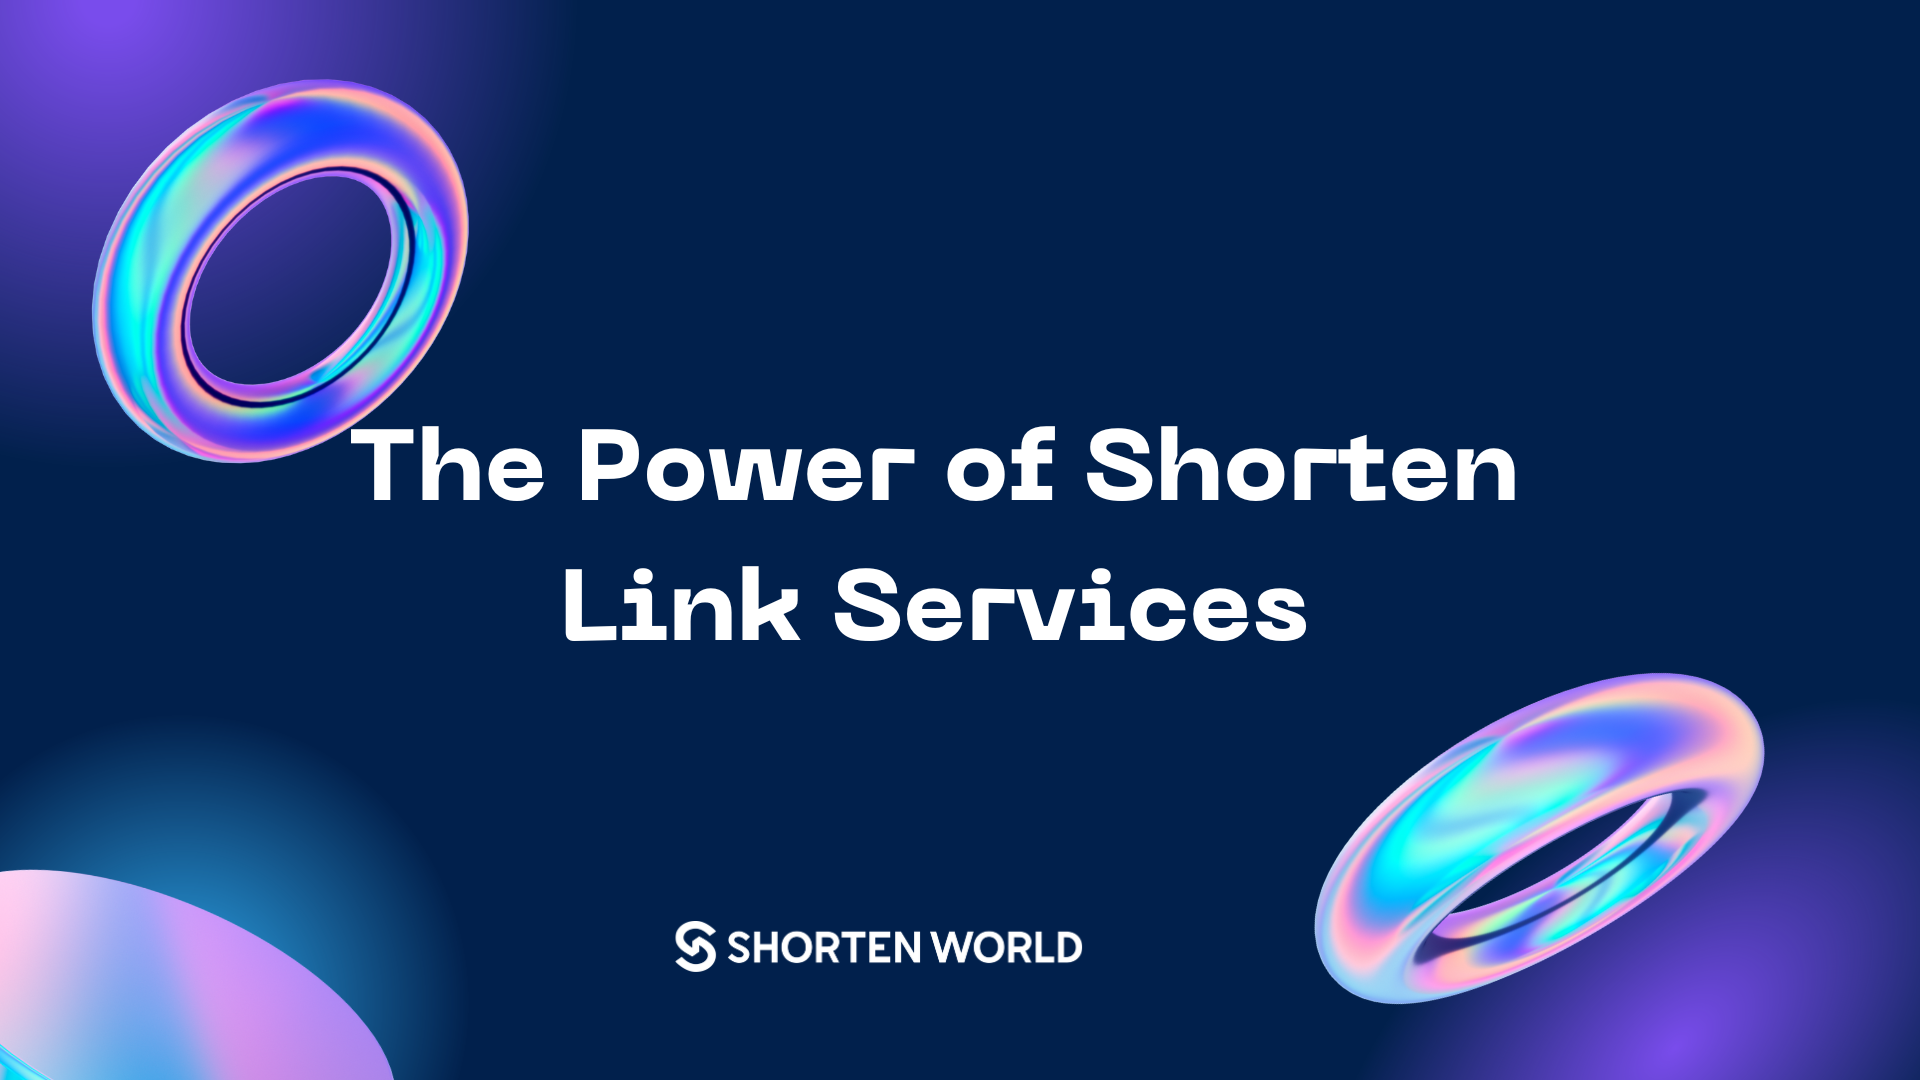 Shorten World - The Power of Shorten Link Services